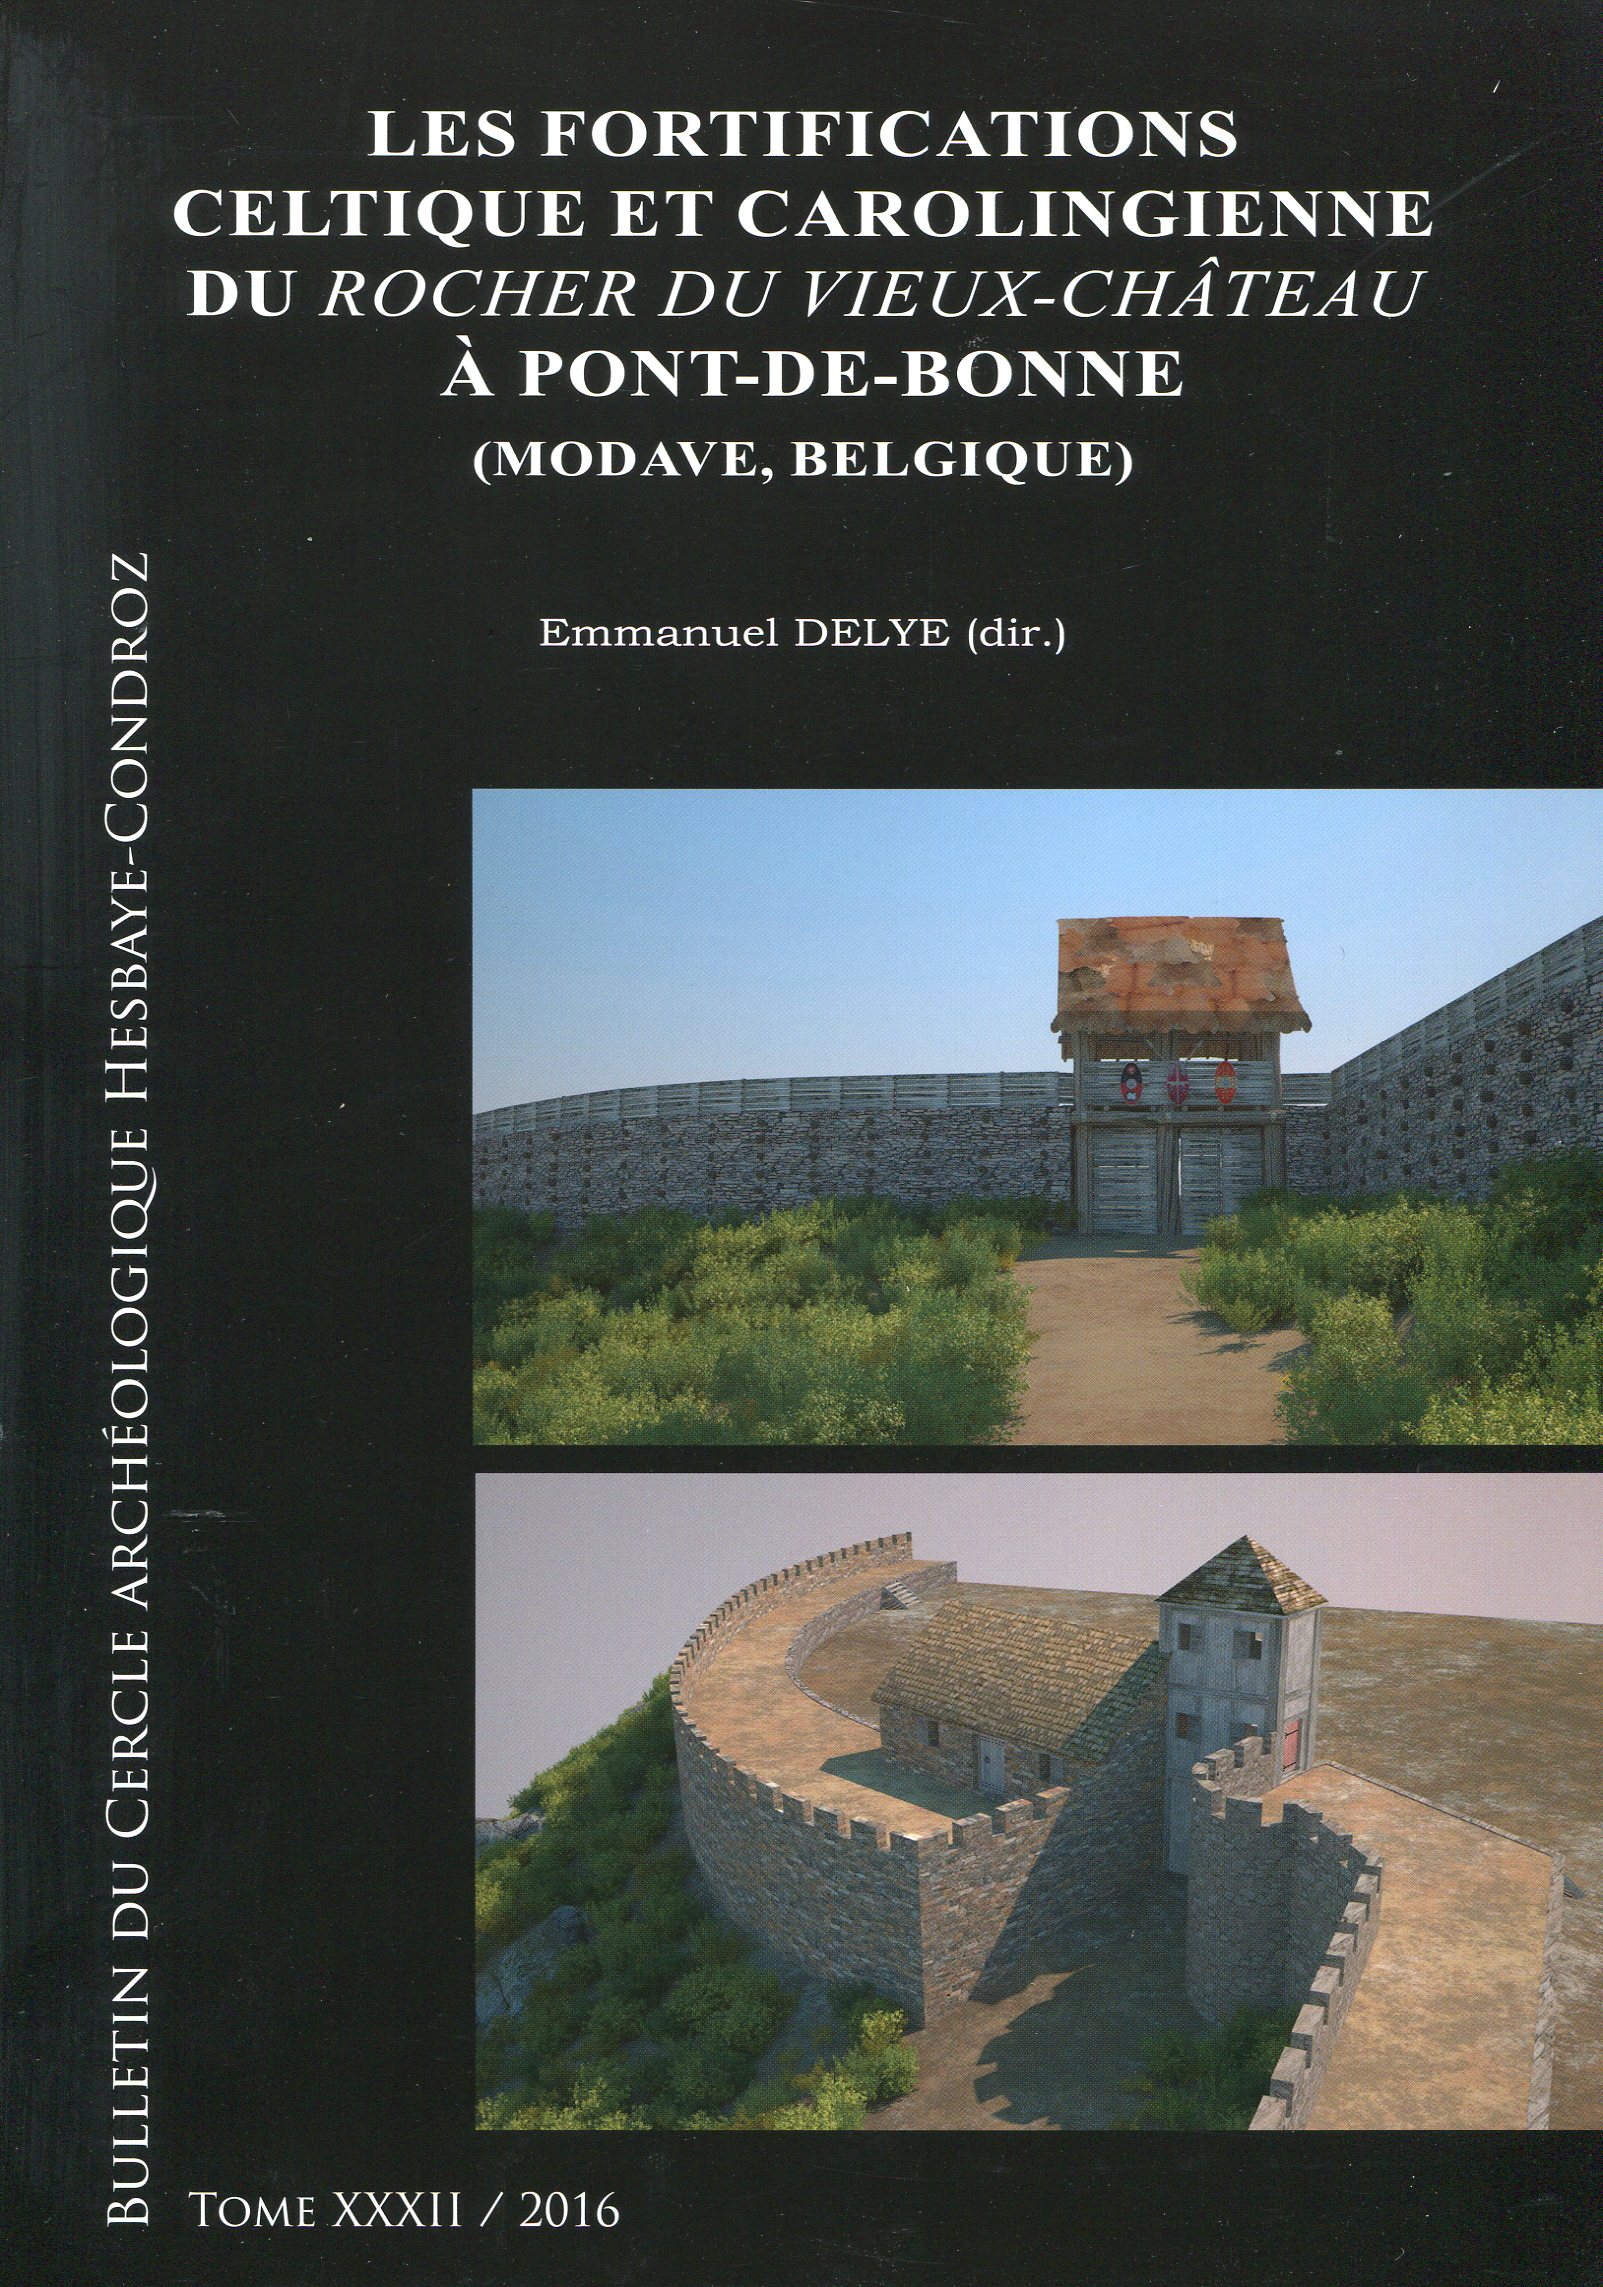 Les fortifications celtique et carolingienne du Rocher du Vieux-Château à Pont-de-Bonne (Modave, Belgique), 2016, 168 p.